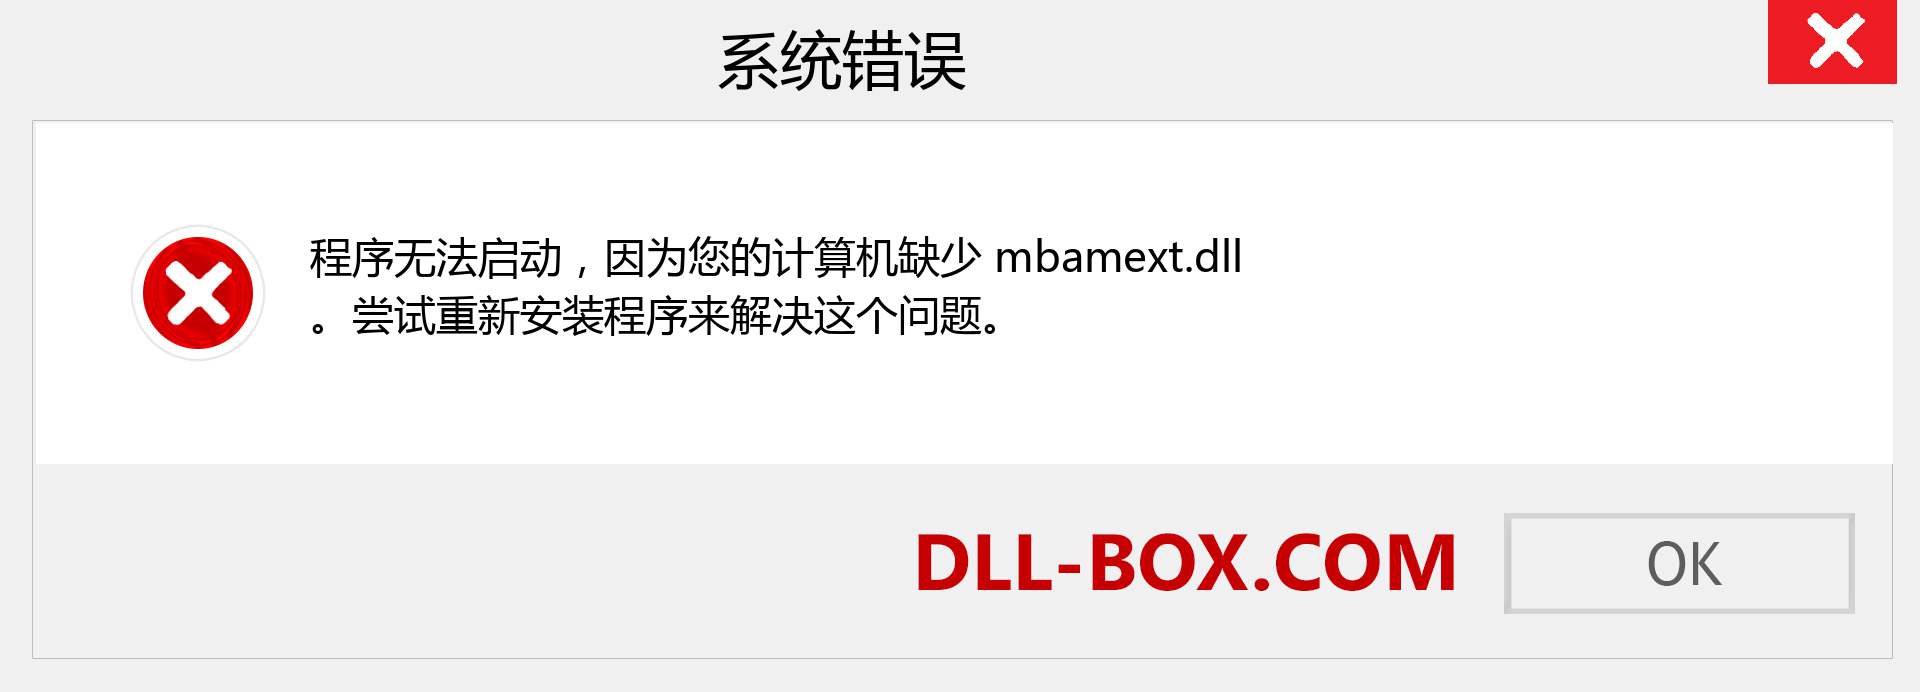 mbamext.dll 文件丢失？。 适用于 Windows 7、8、10 的下载 - 修复 Windows、照片、图像上的 mbamext dll 丢失错误